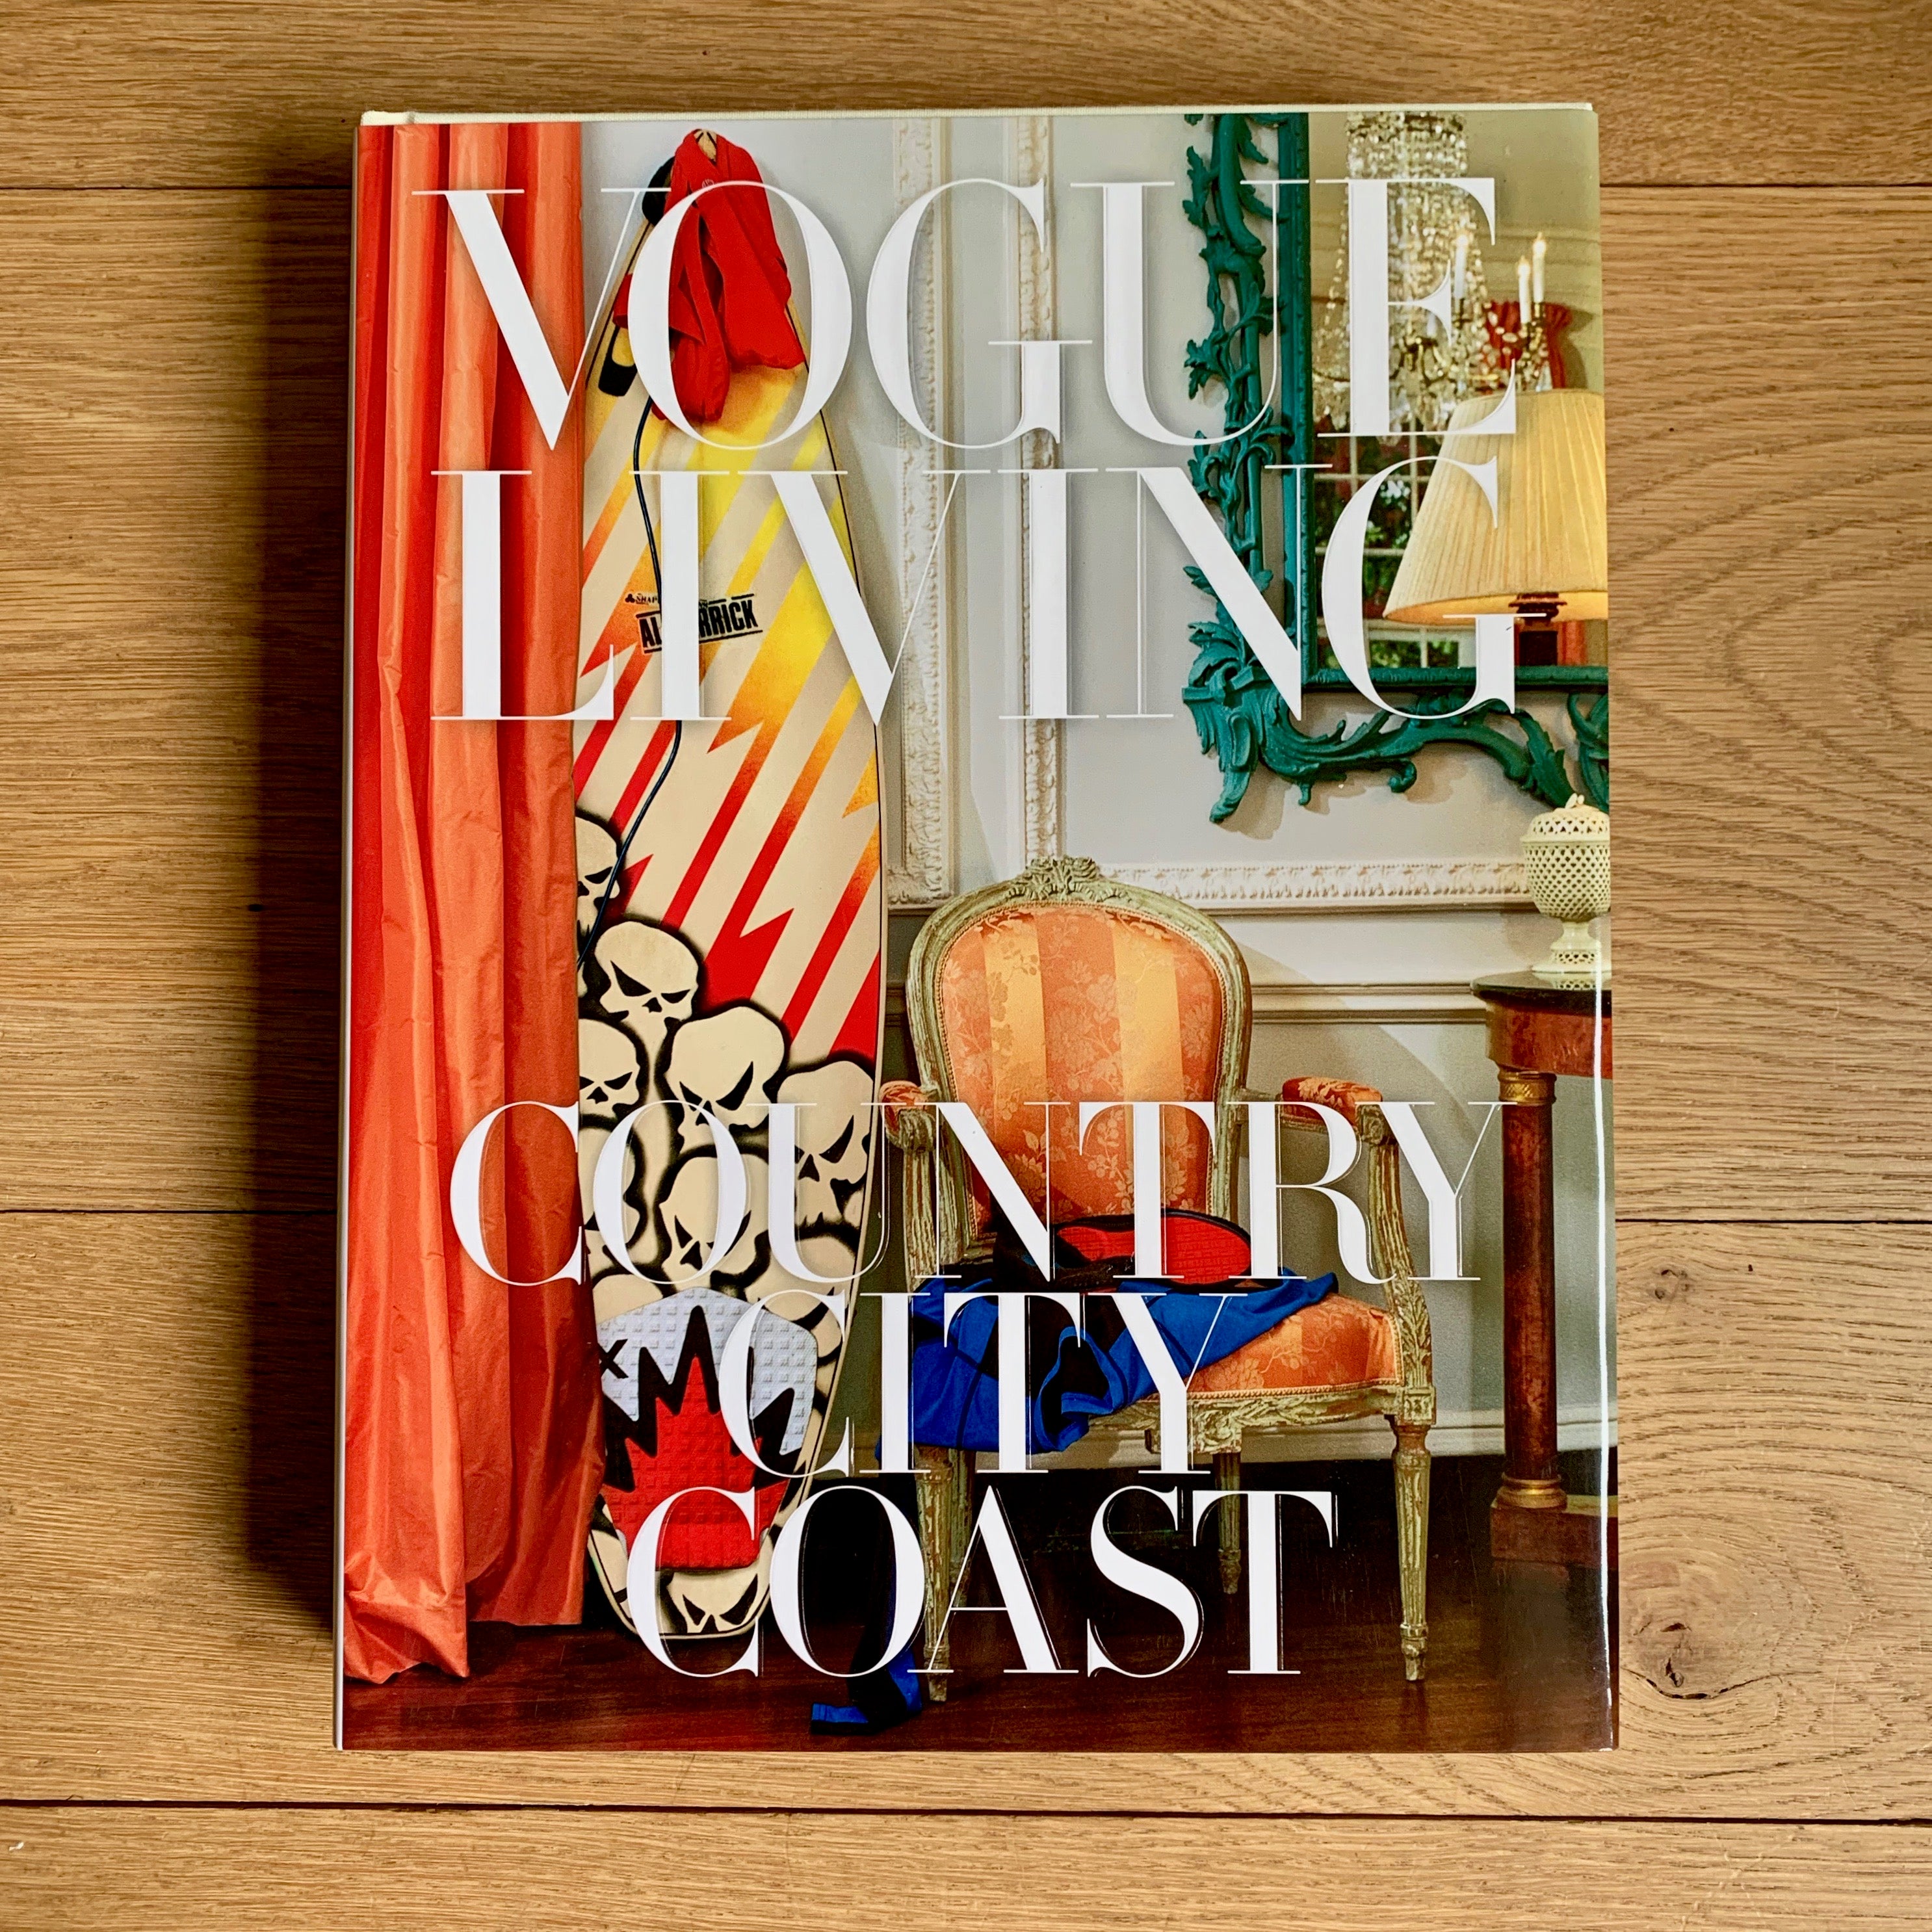 Vogue Living - Country City Coast